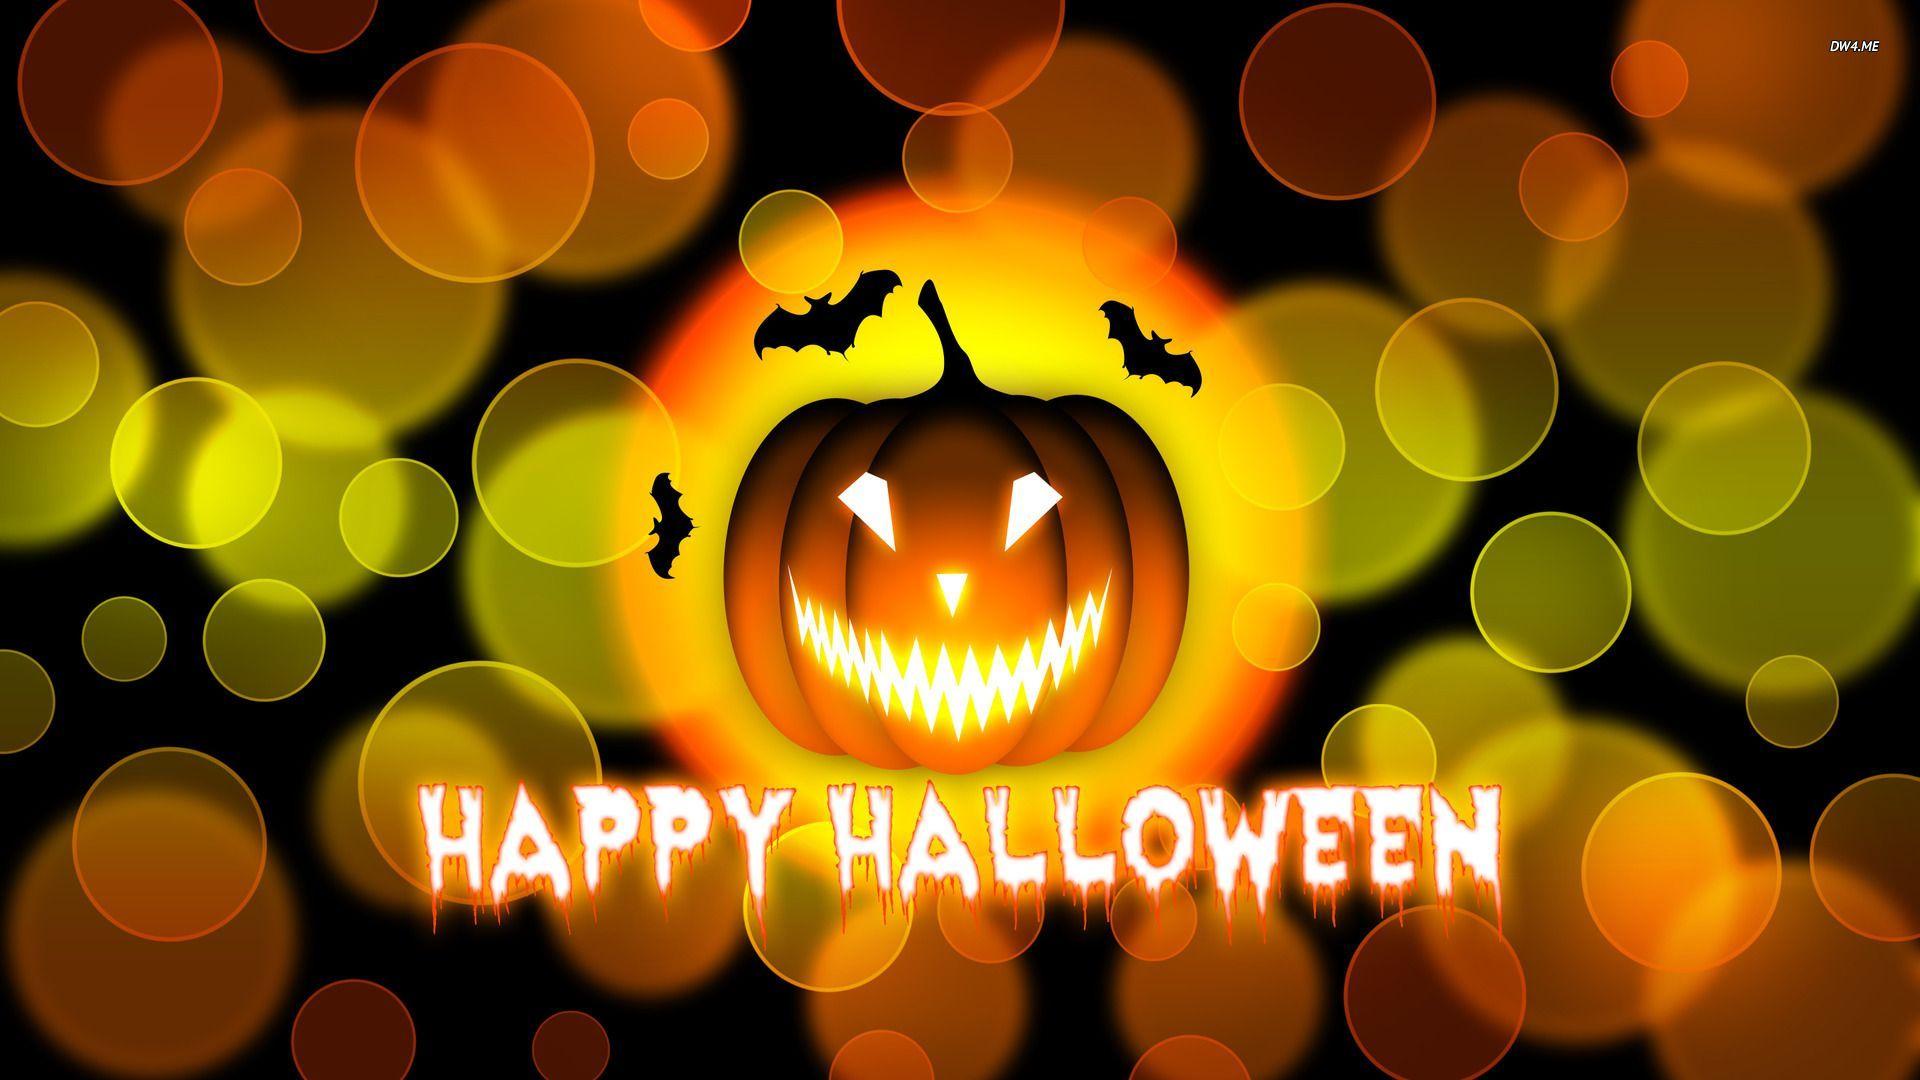 Happy HalloweenWeHeartIt  Halloween wallpaper backgrounds Happy halloween  pictures Halloween wallpaper iphone